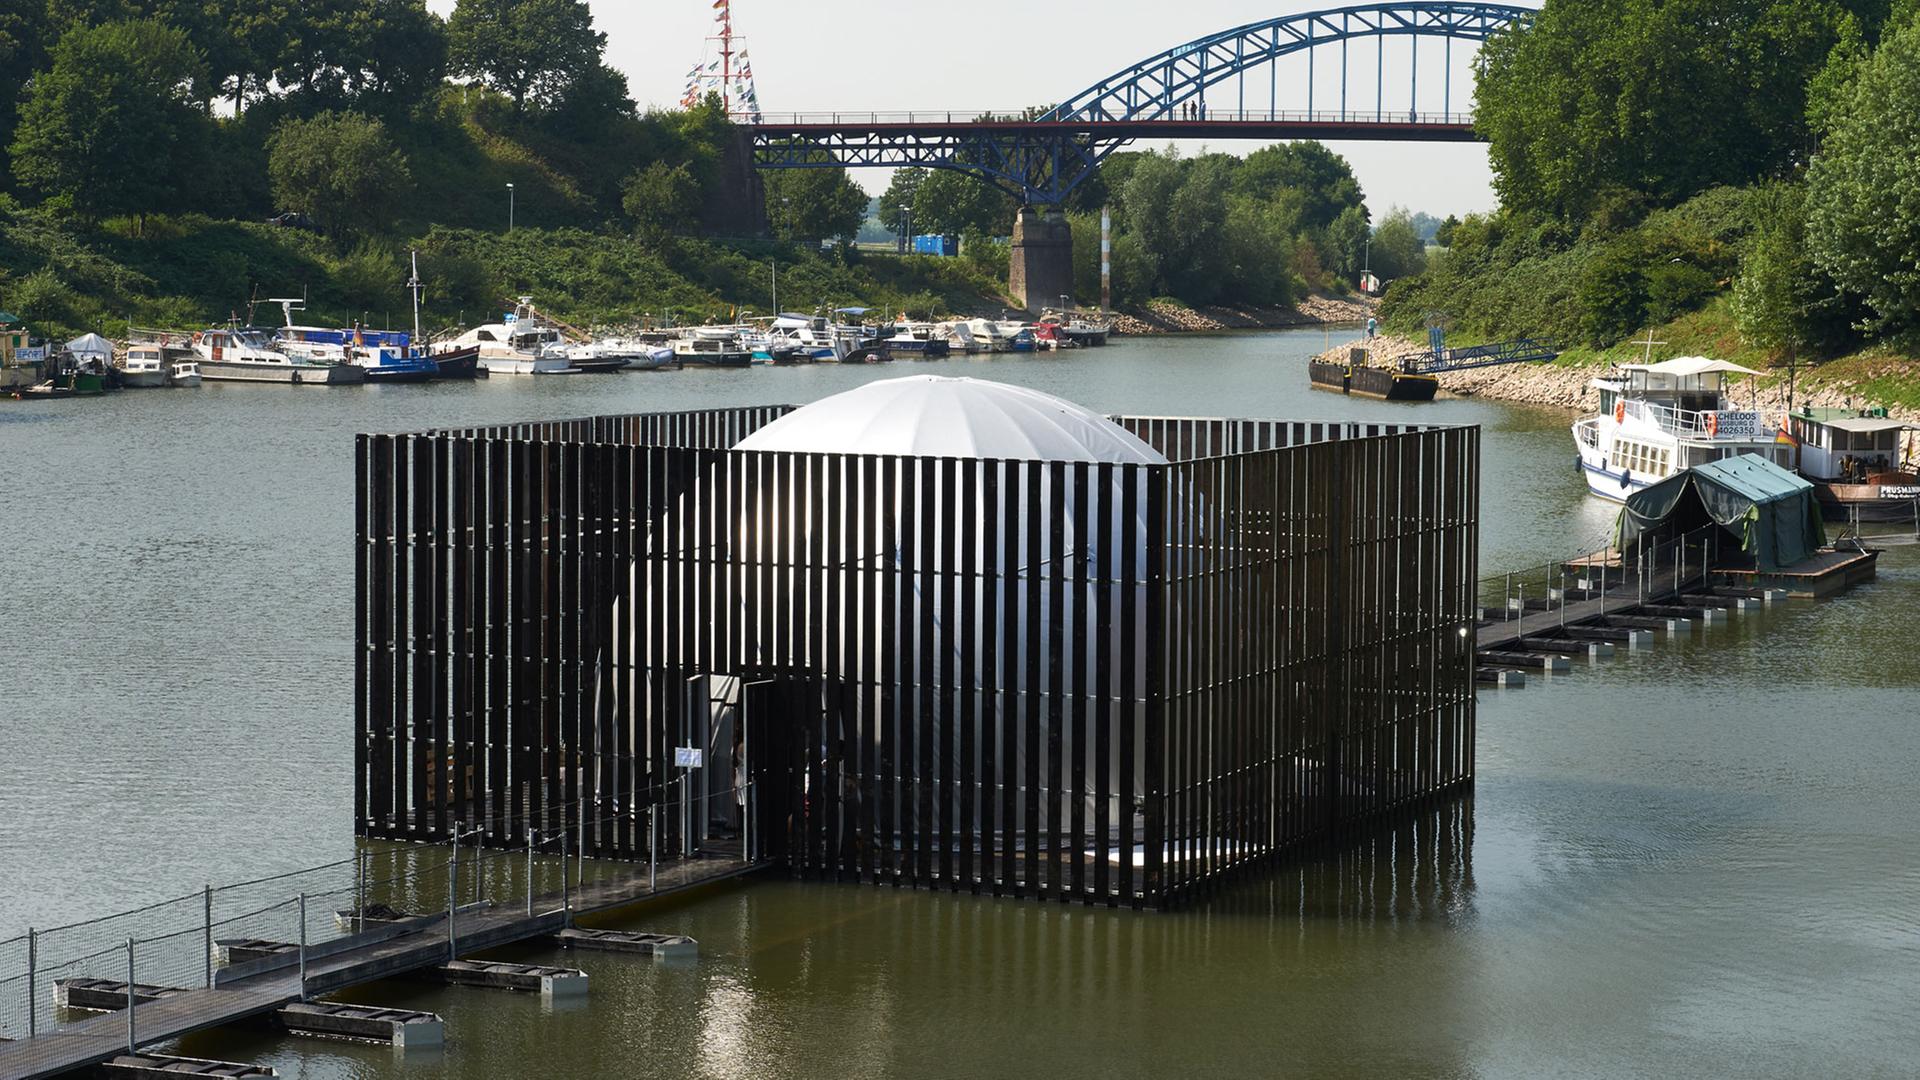 Die Installation "Nomanslanding" im ehemaligen Eisenbahnhafen in Duisburg-Ruhrort. Sie umfasst zwei große, bewegliche Plattformen, die sich auf der Wasserfläche allmählich zu einem Dom in Form einer Halbkugel vereinigen. 